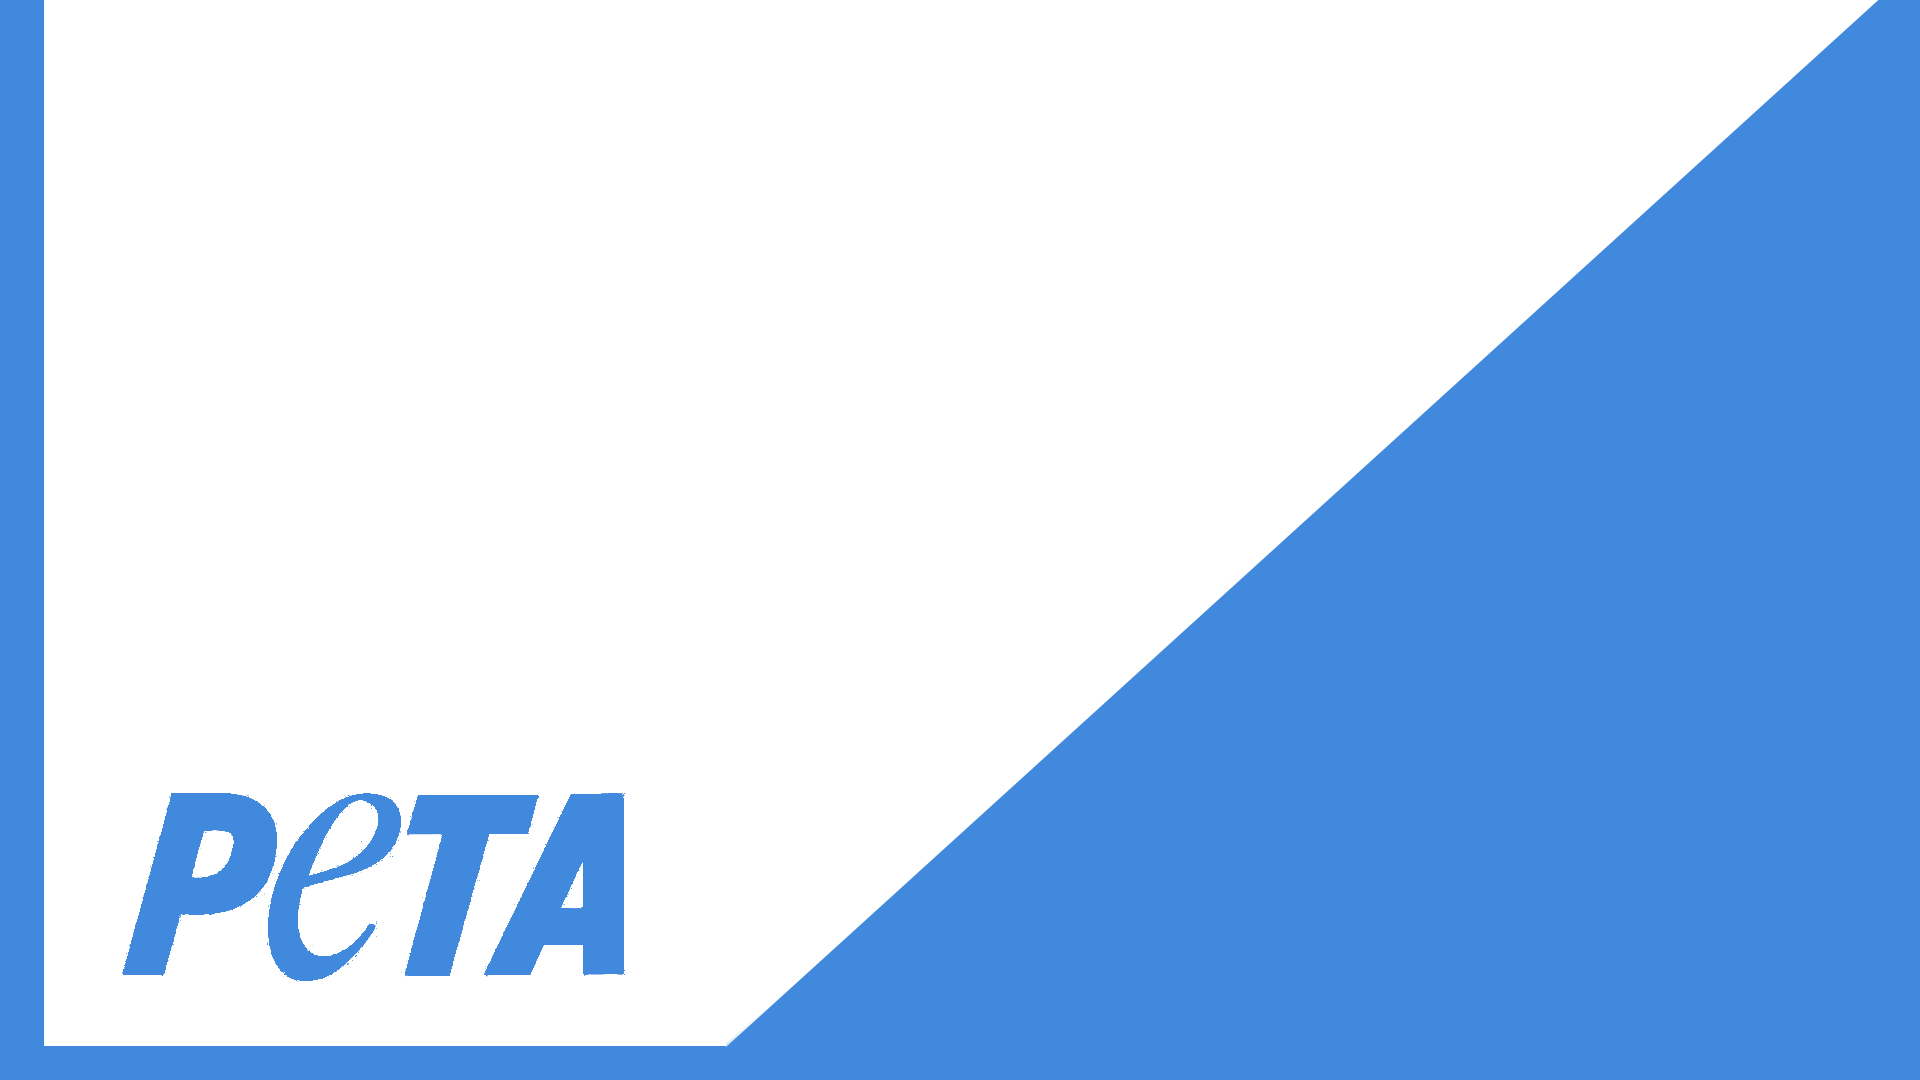 PeTA blue and white